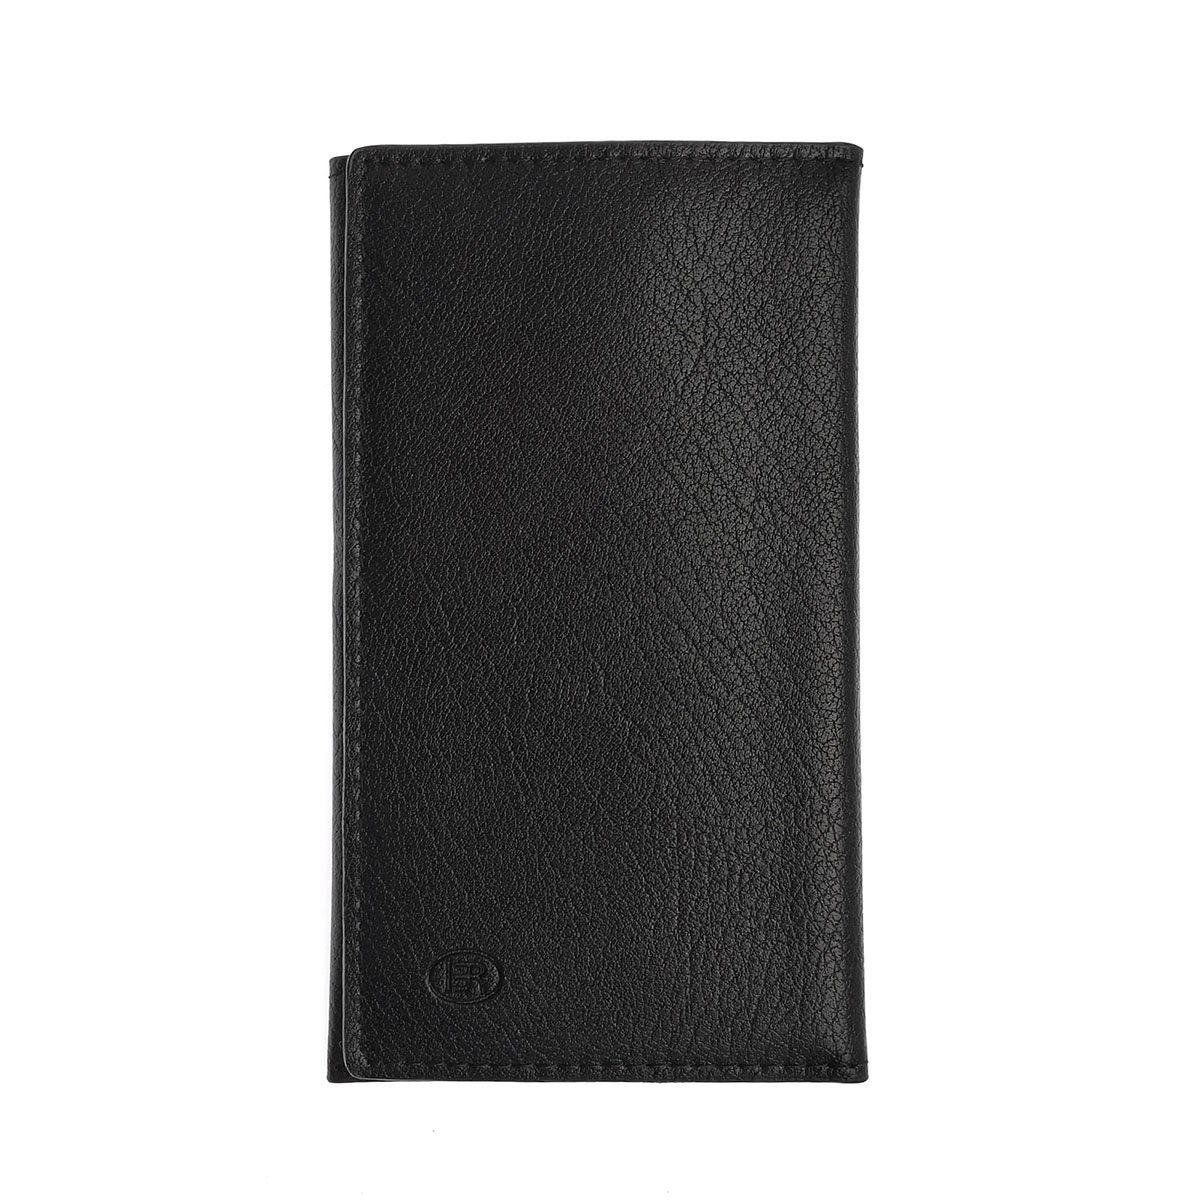 Чехол кошелек универсальный для смартфонов размером 4.7, экокожа, визитница, цвет черный.